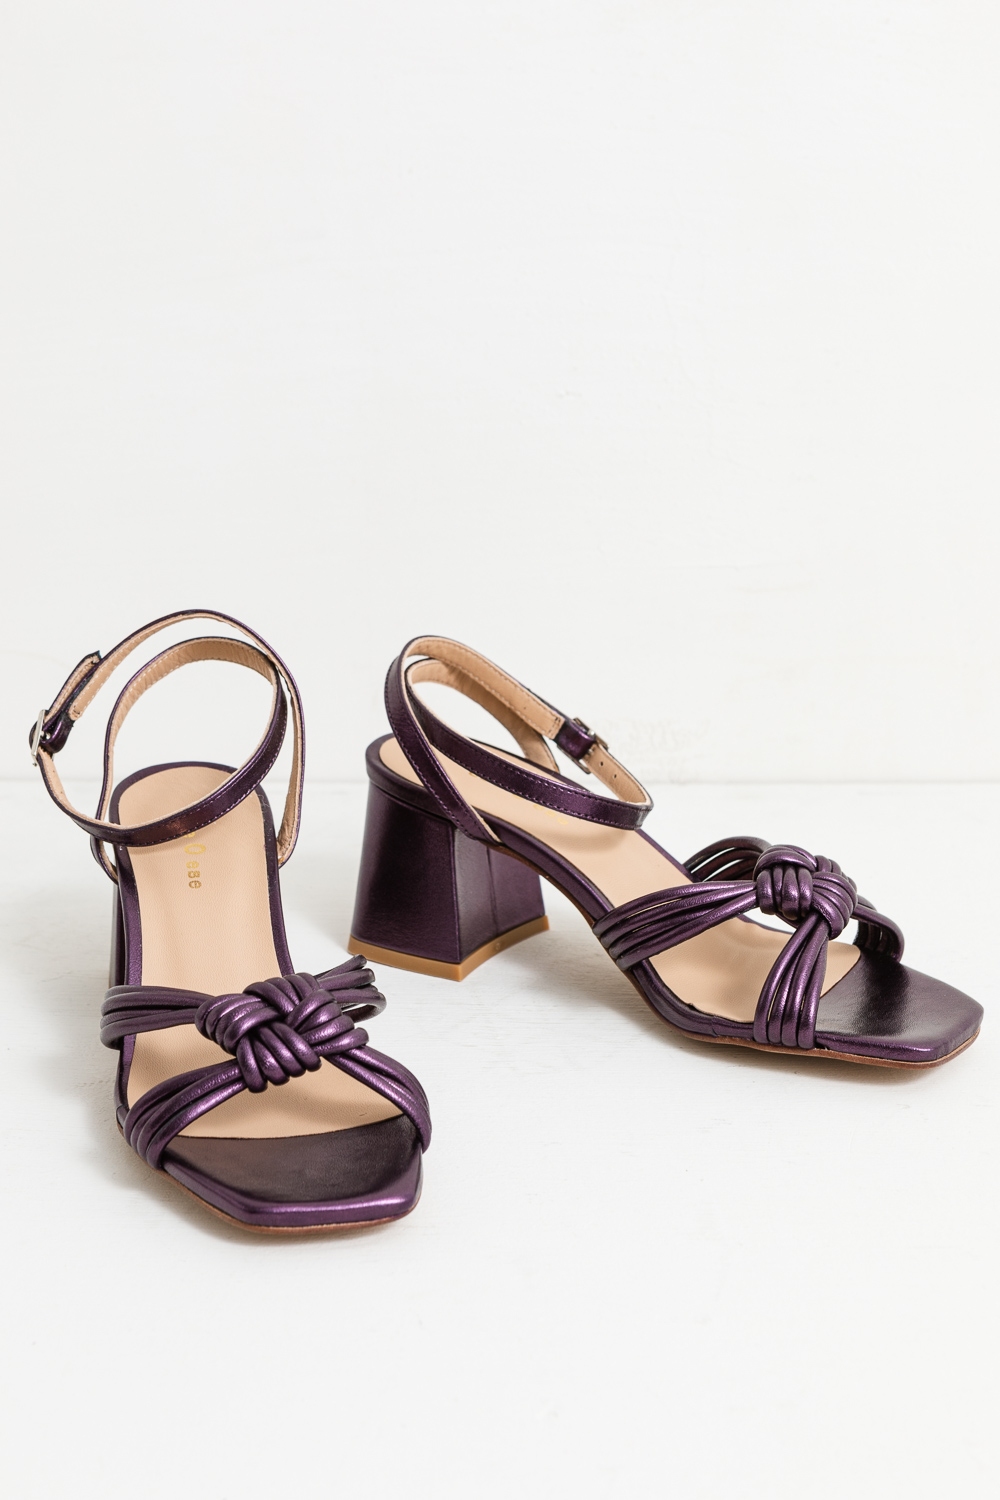 Ardiente etiqueta Pero sandalia tacón nudo violeta